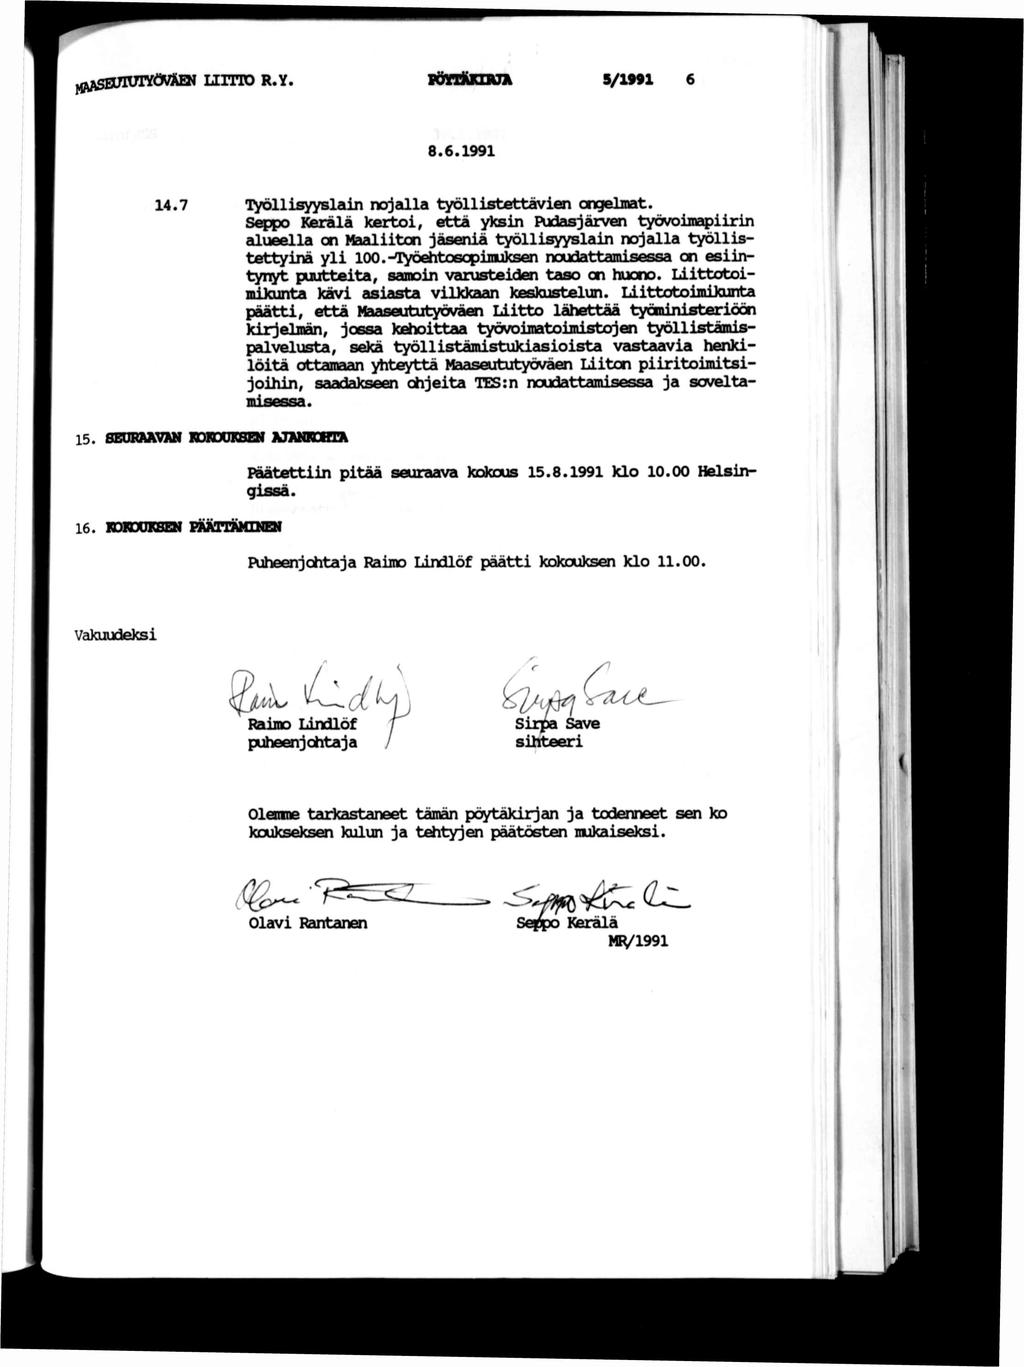 LETD R.Y vönkxzja s/1991 8.6.1991 14.7 oyölllsyybledn nojzdla työllstettäven Gnc^elnat.